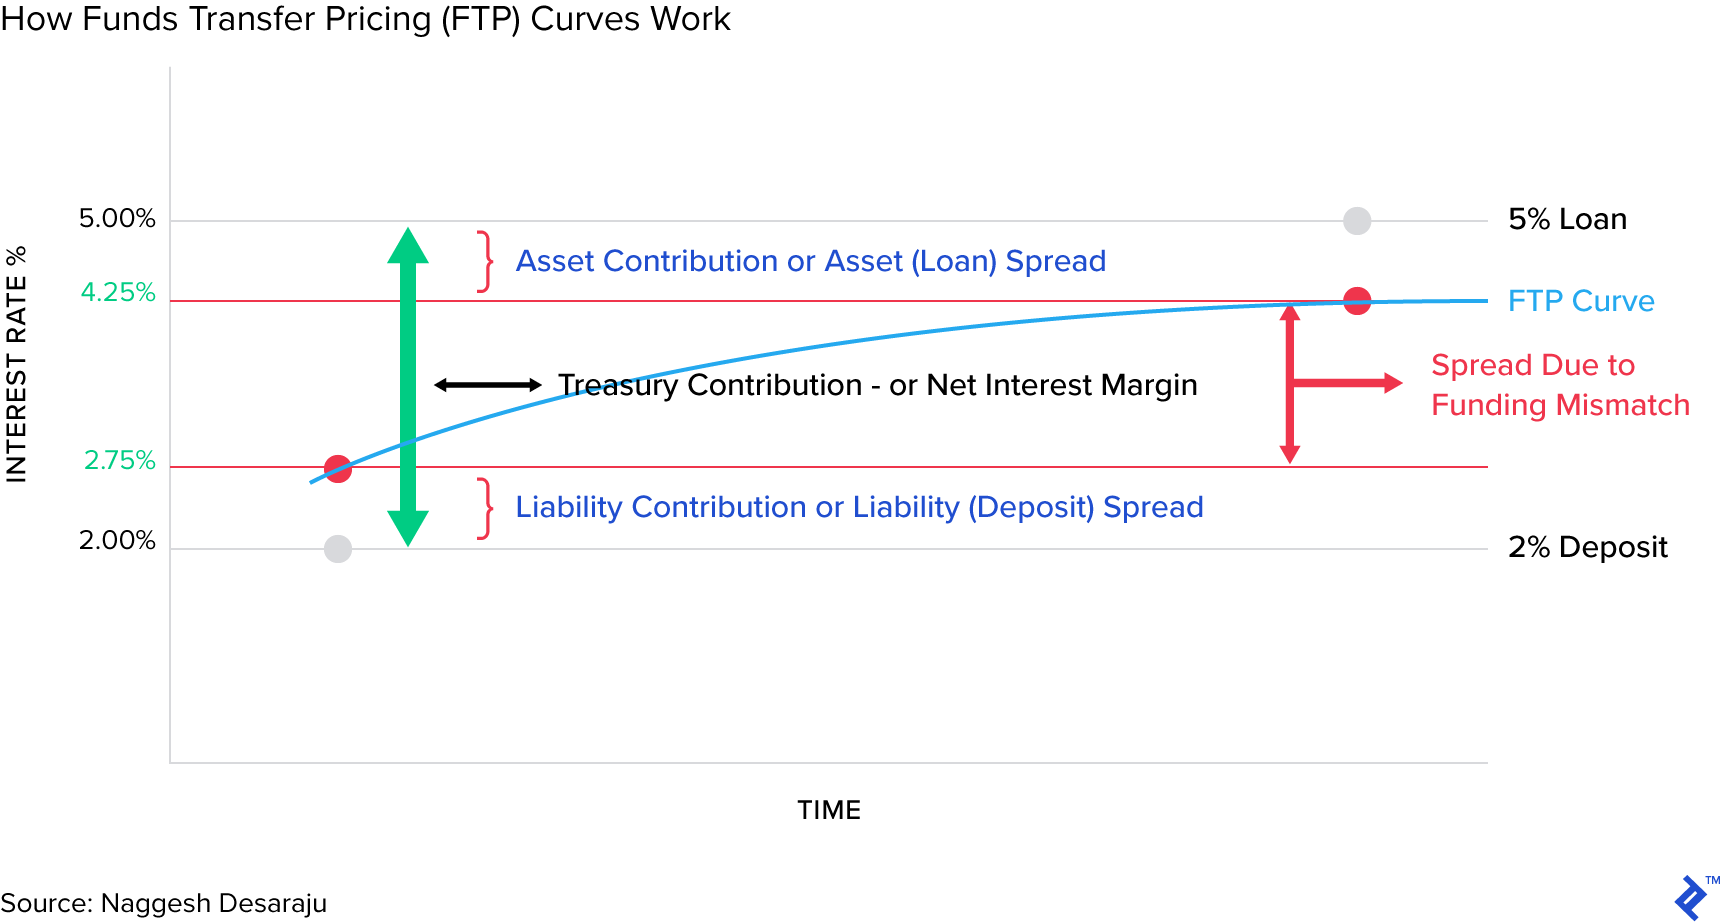 基金转移定价或FTP曲线是如何工作的？